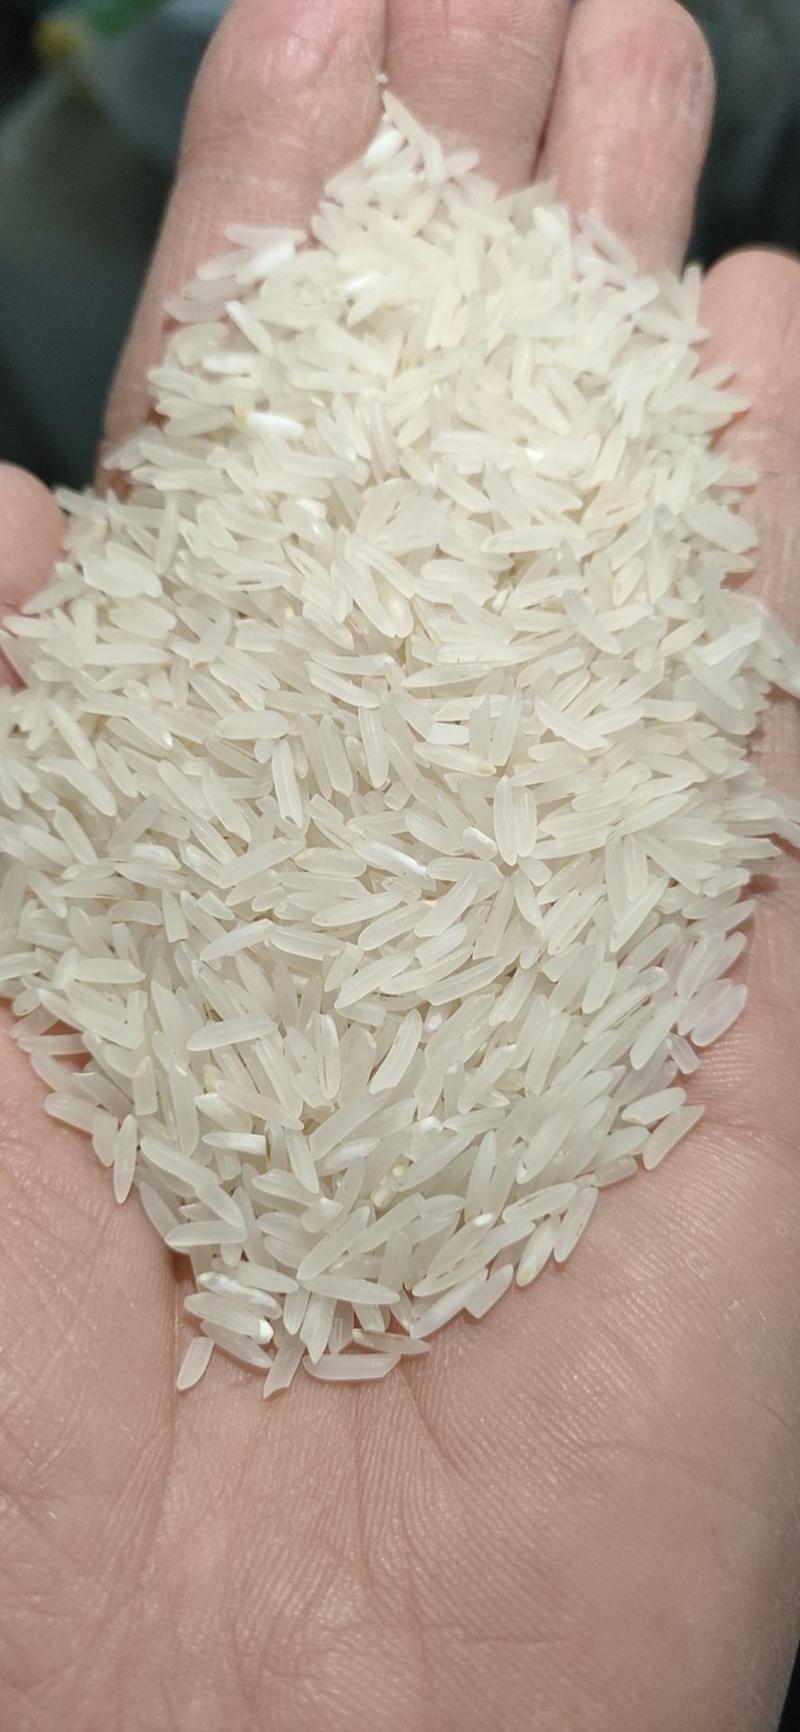 象牙米桂林市厂家直销砂锅饭煲仔饭专用米。